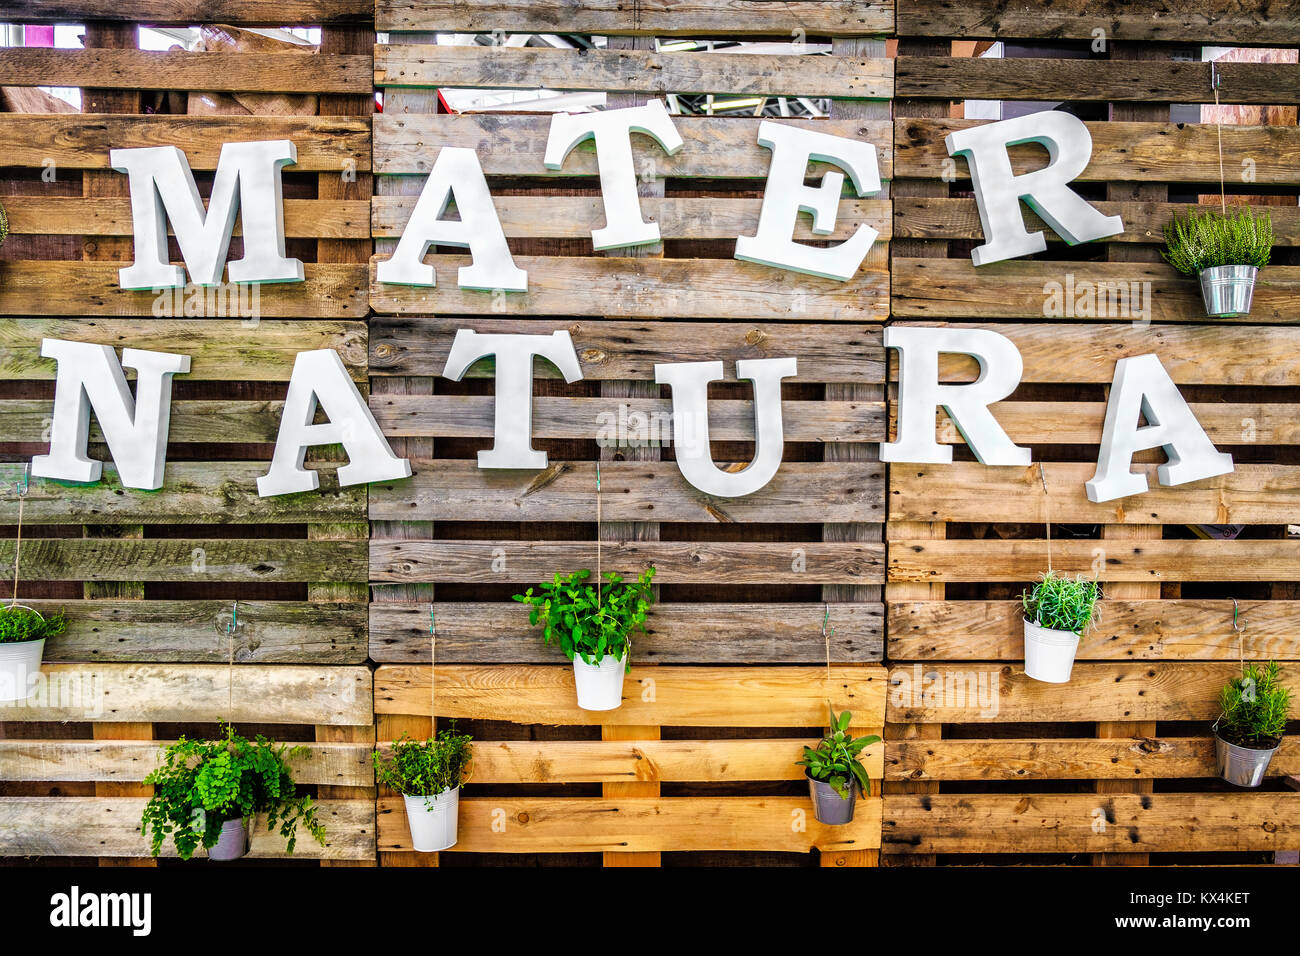 Mater natura mère nature green thumb texte fond de bois Palettes Banque D'Images